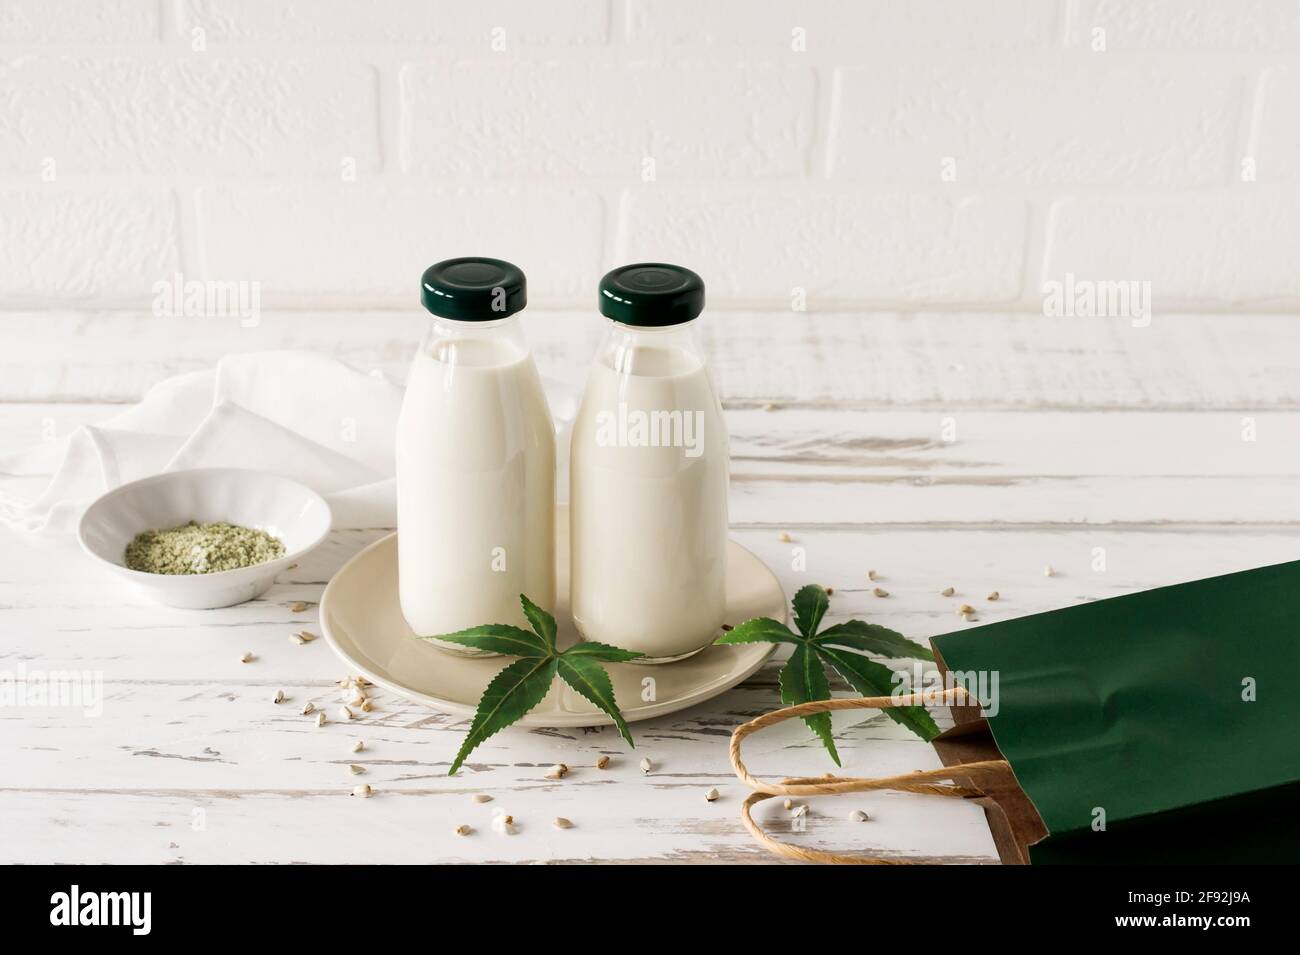 Flaschen mit Cannabis pflanzlichem veganem Gluten und laktosefreier Milch und Cannabisblättern auf Holztisch. Stockfoto